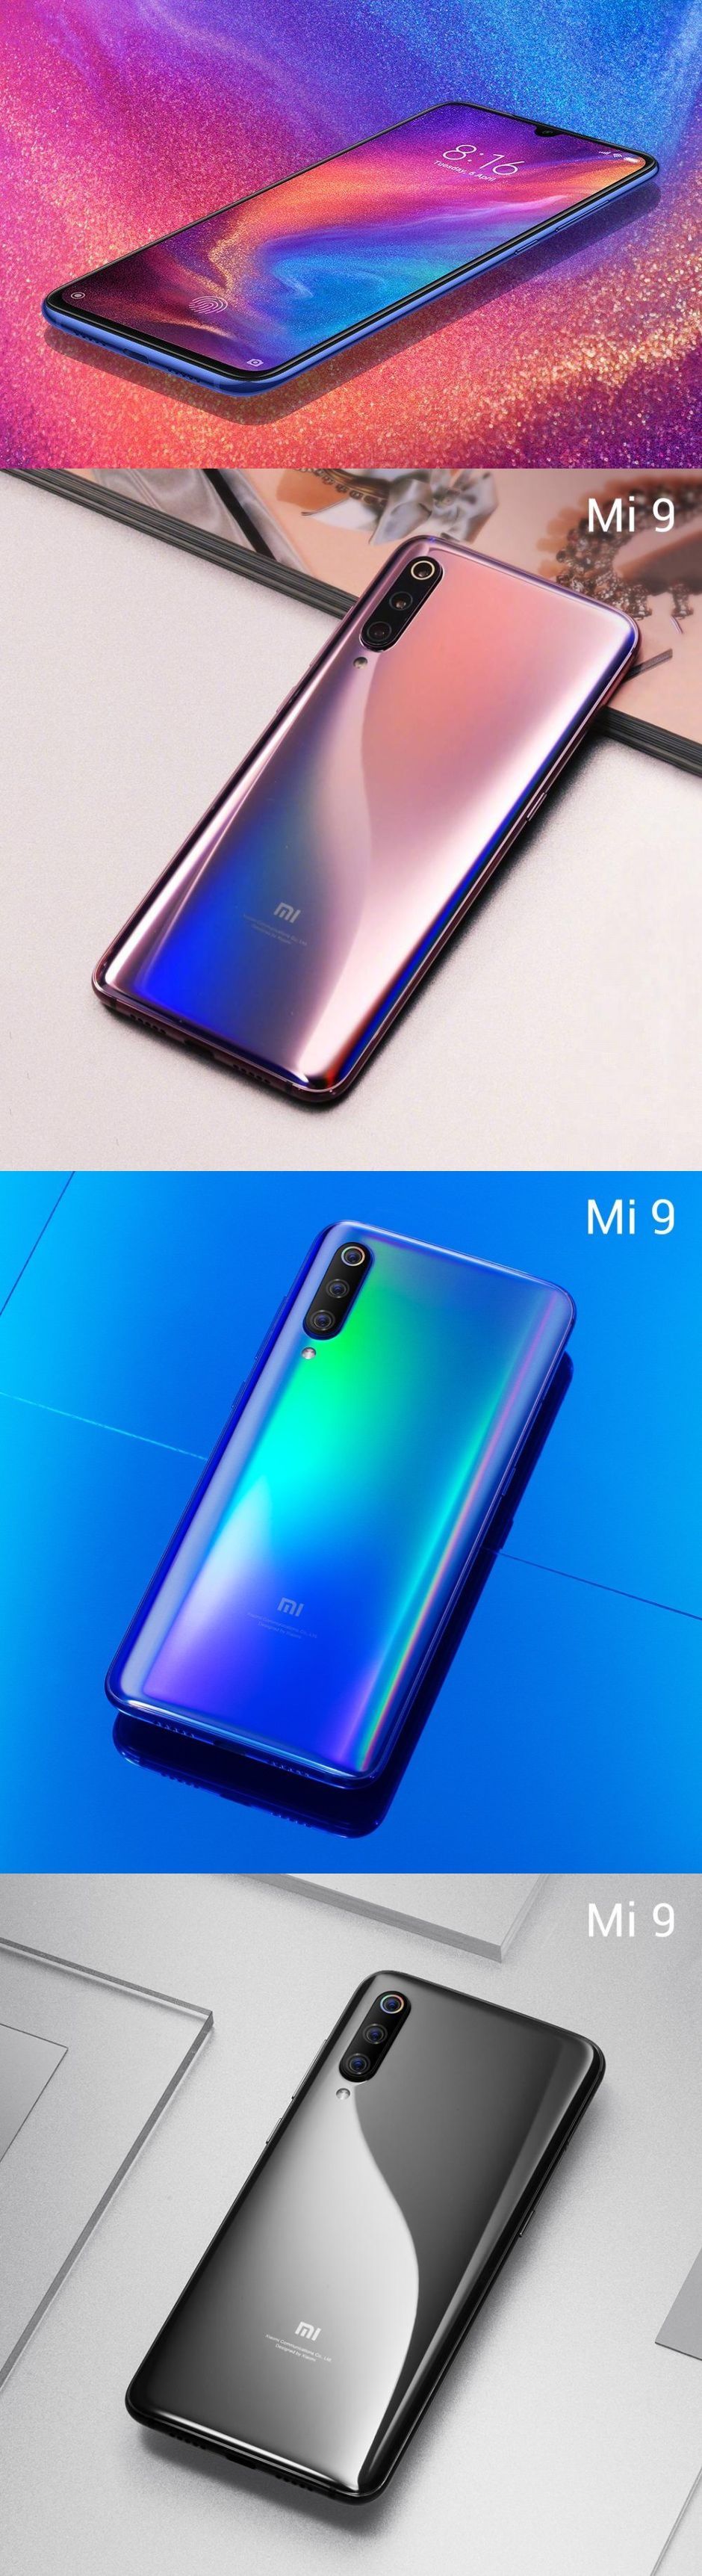 Xiaomi Mi 9: maximális erő, nem prémium áron